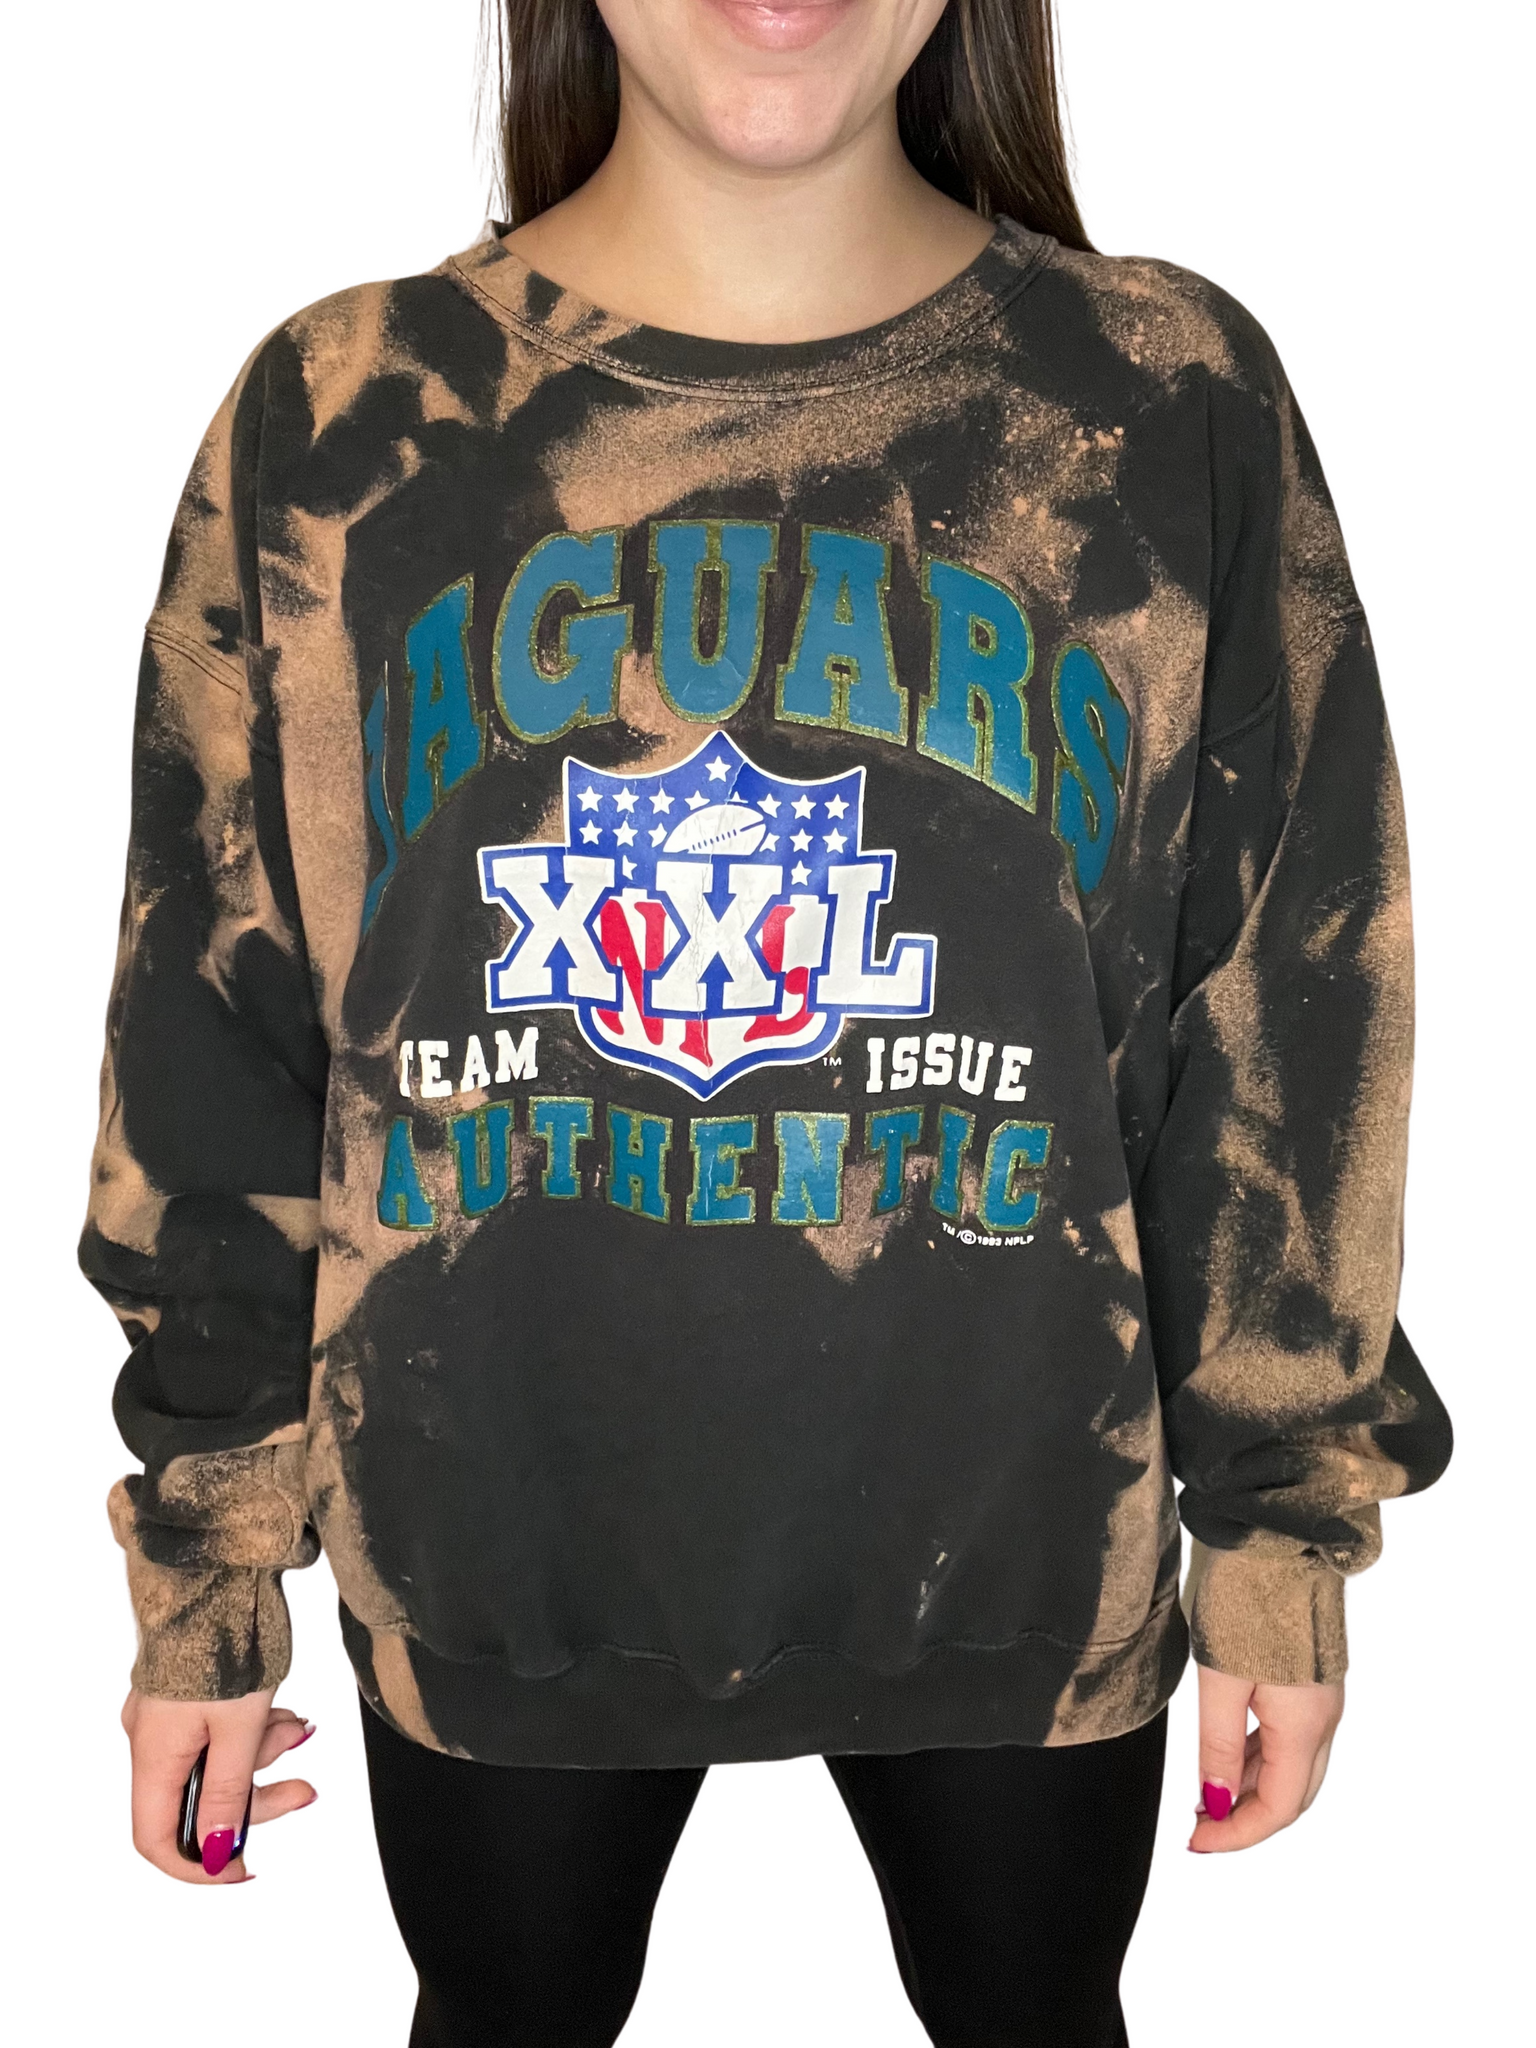 jacksonville jaguars crewneck sweatshirt